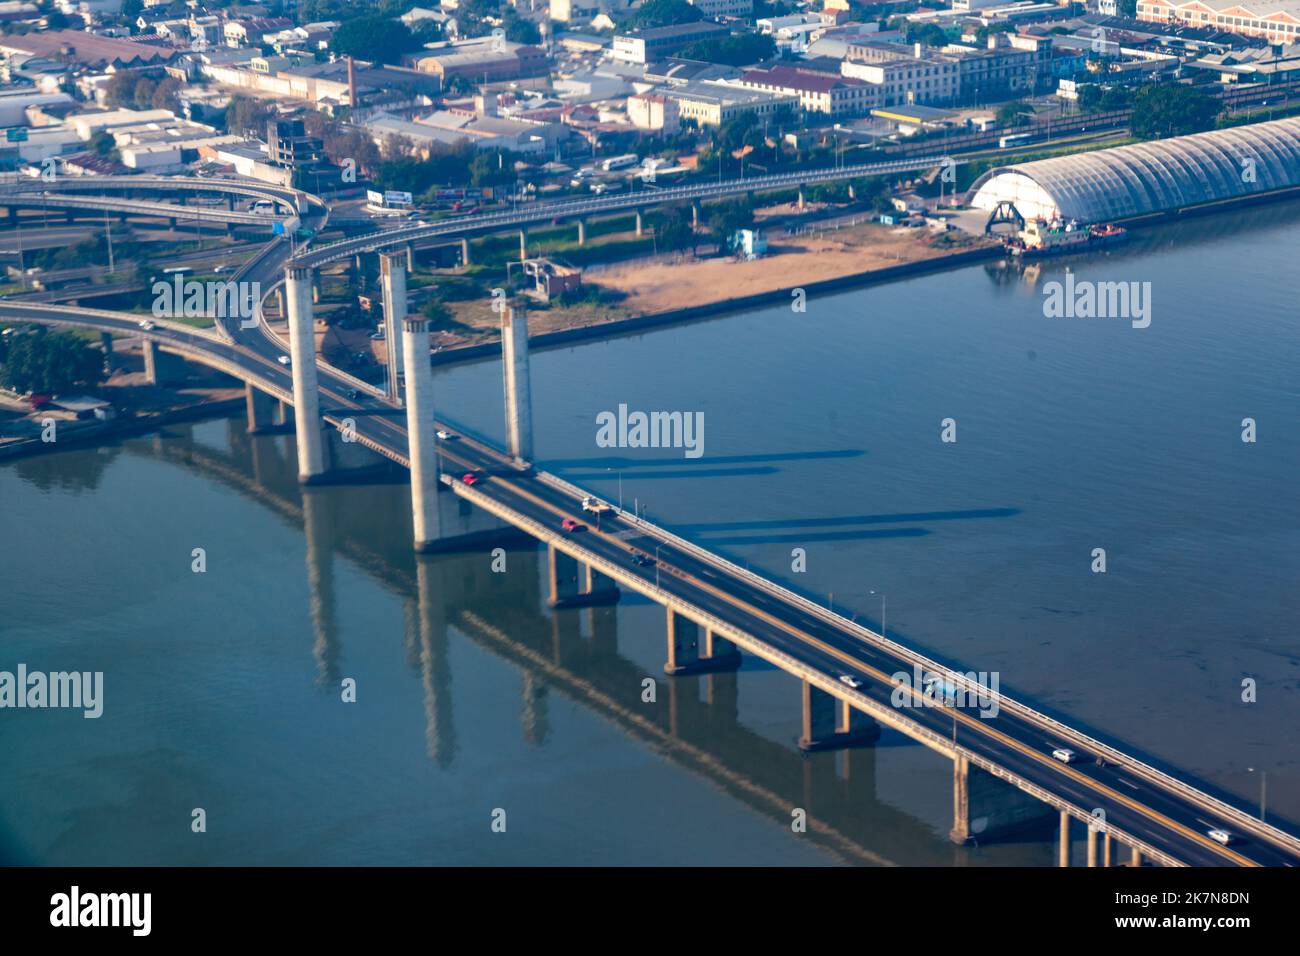 An aerial view of the suspension bridge in the City of Porto Alegre from the air, Rio Grande do Sul, Brazil Stock Photo